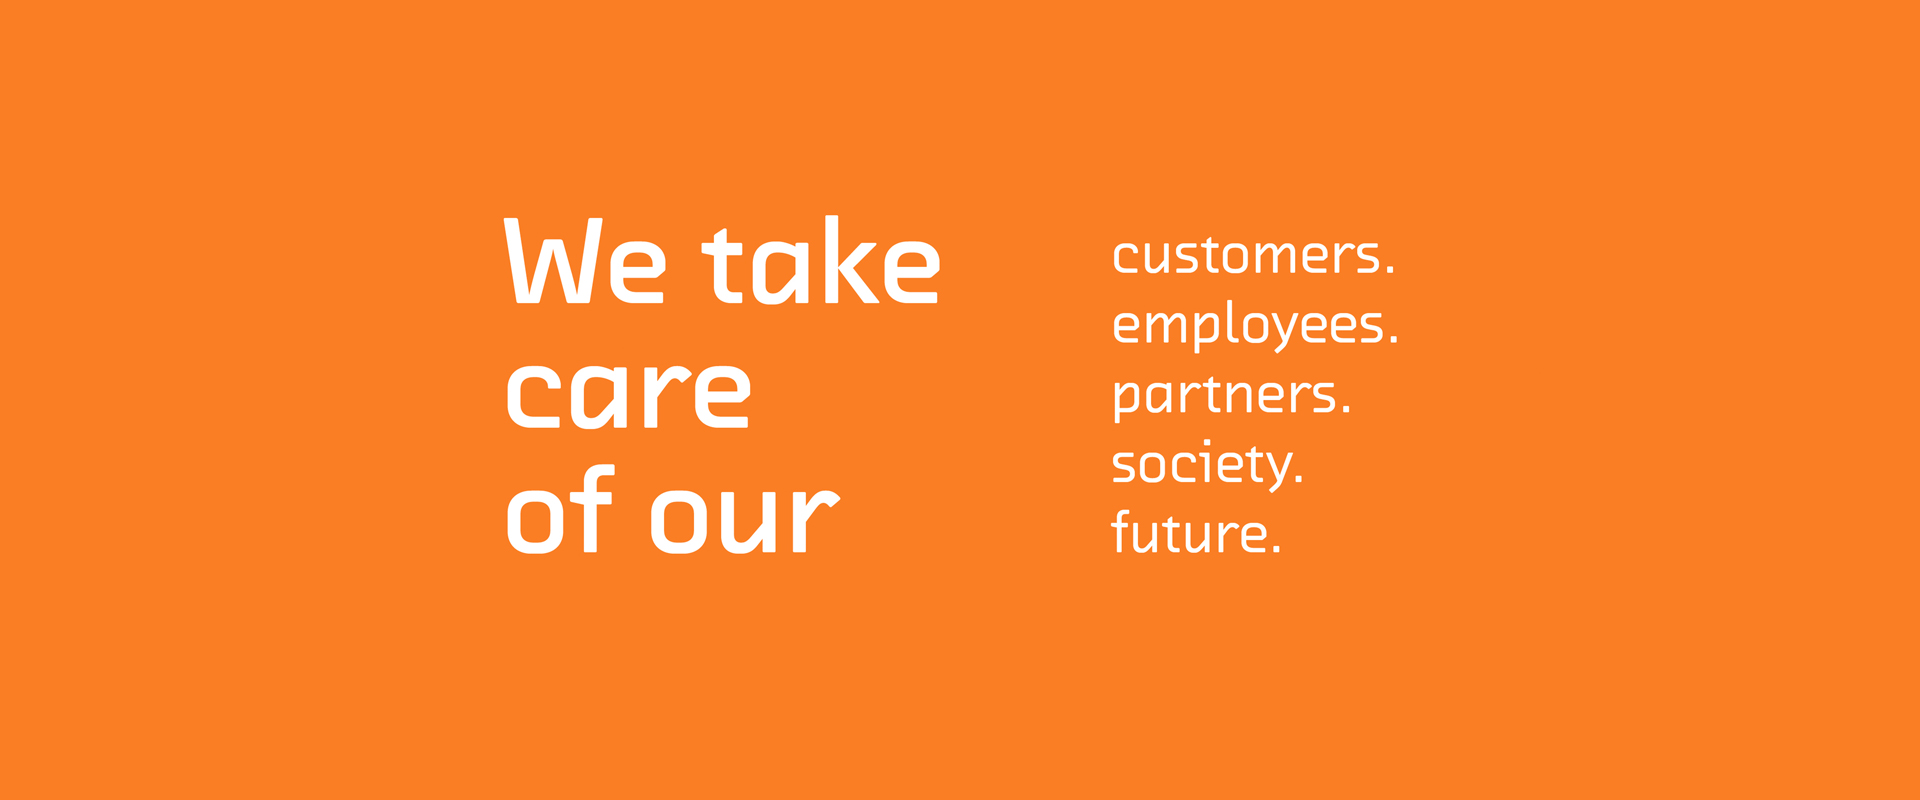 Grafische Darstellung des MSIGEU Claims vor hellorangenem Hintergrund. Der Text lautet "We take care of our customers. Employees. Partners. Society. Future."